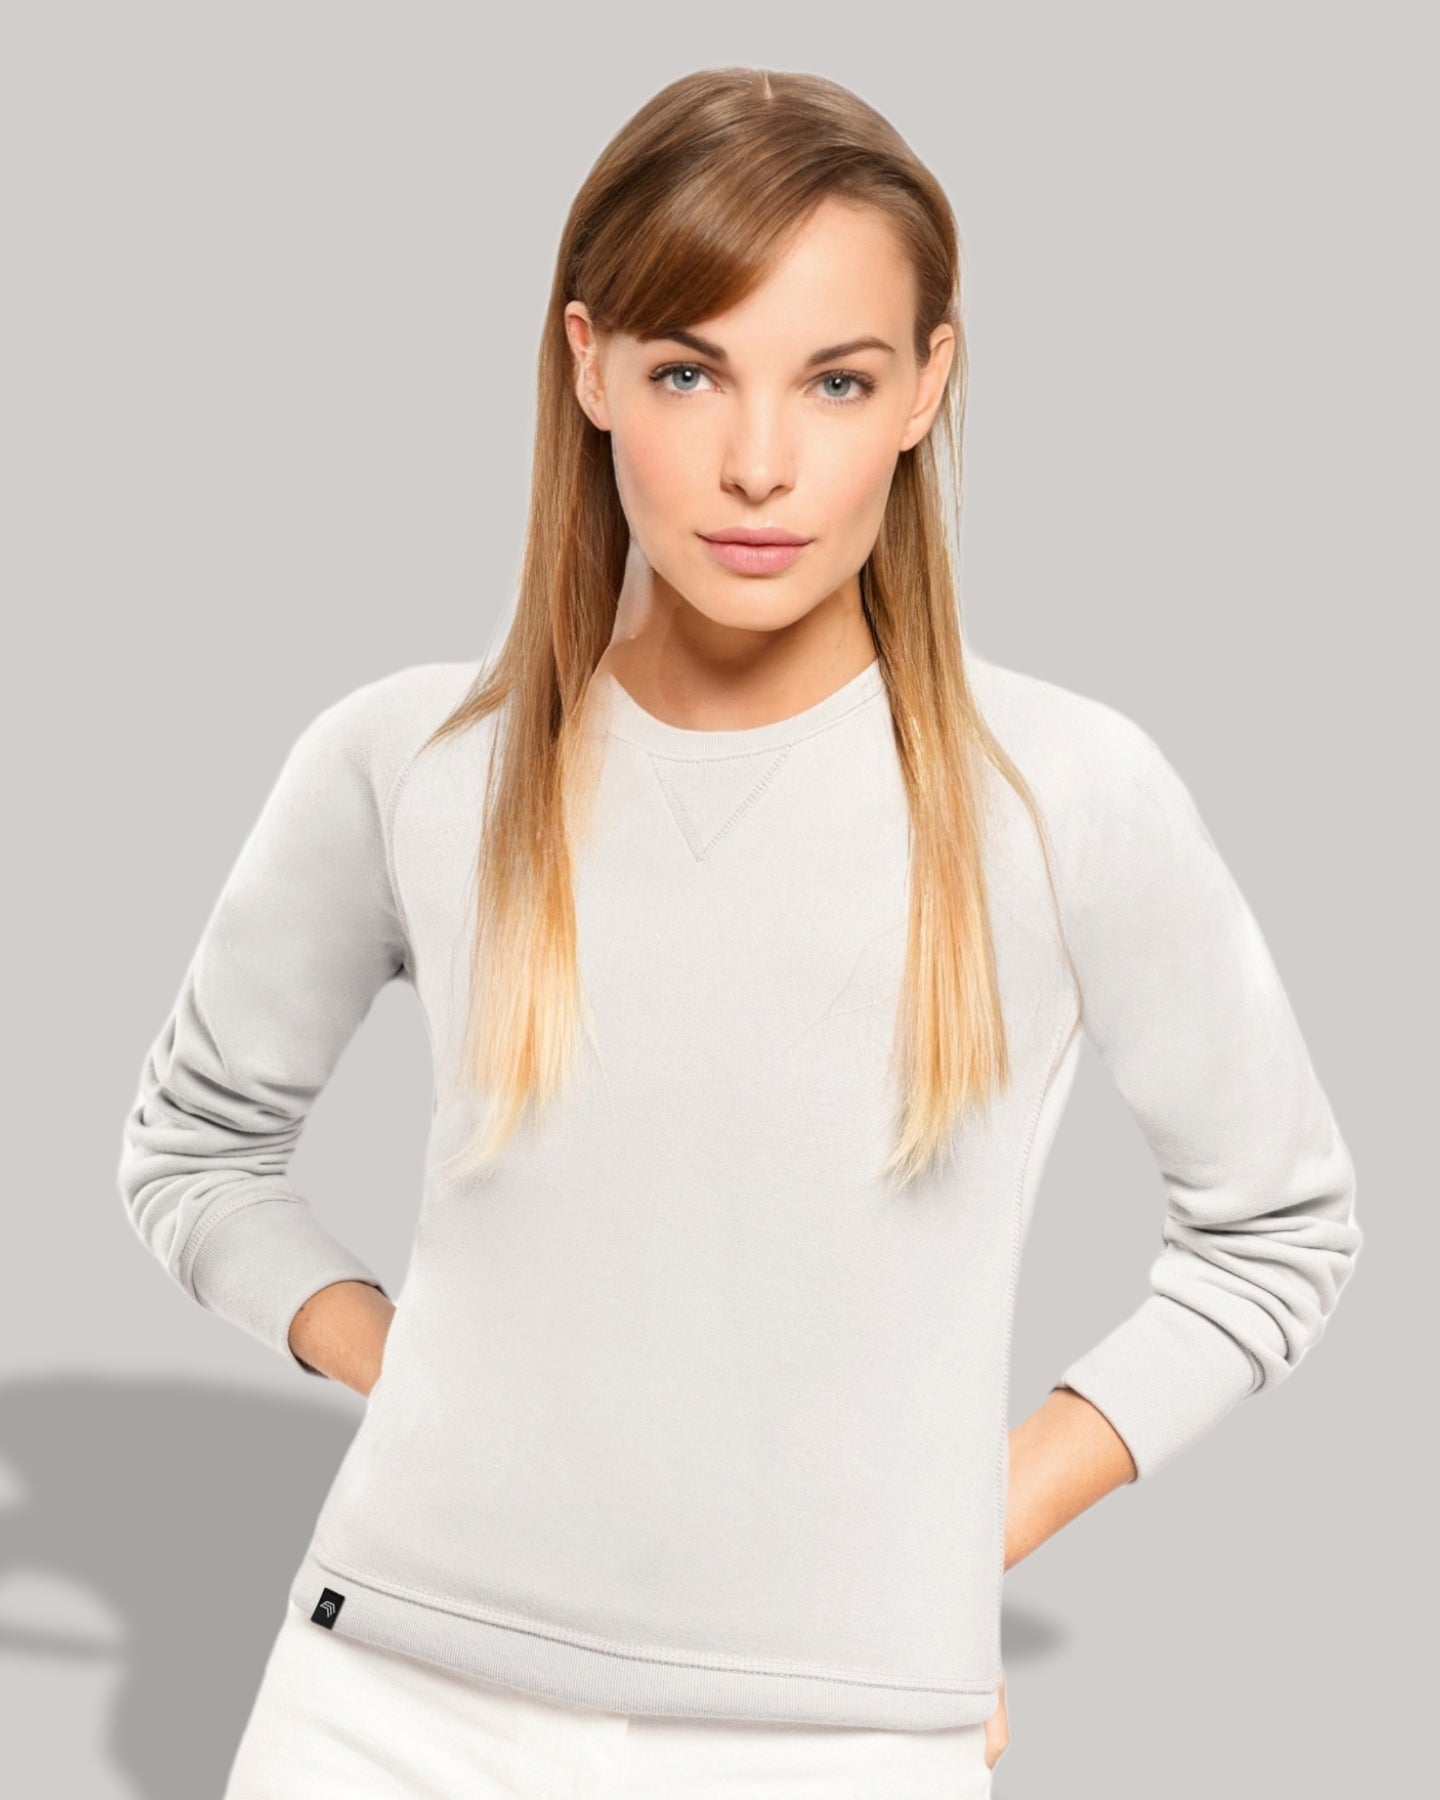 KRB K481 Women's Bio-Baumwolle Sweatshirt